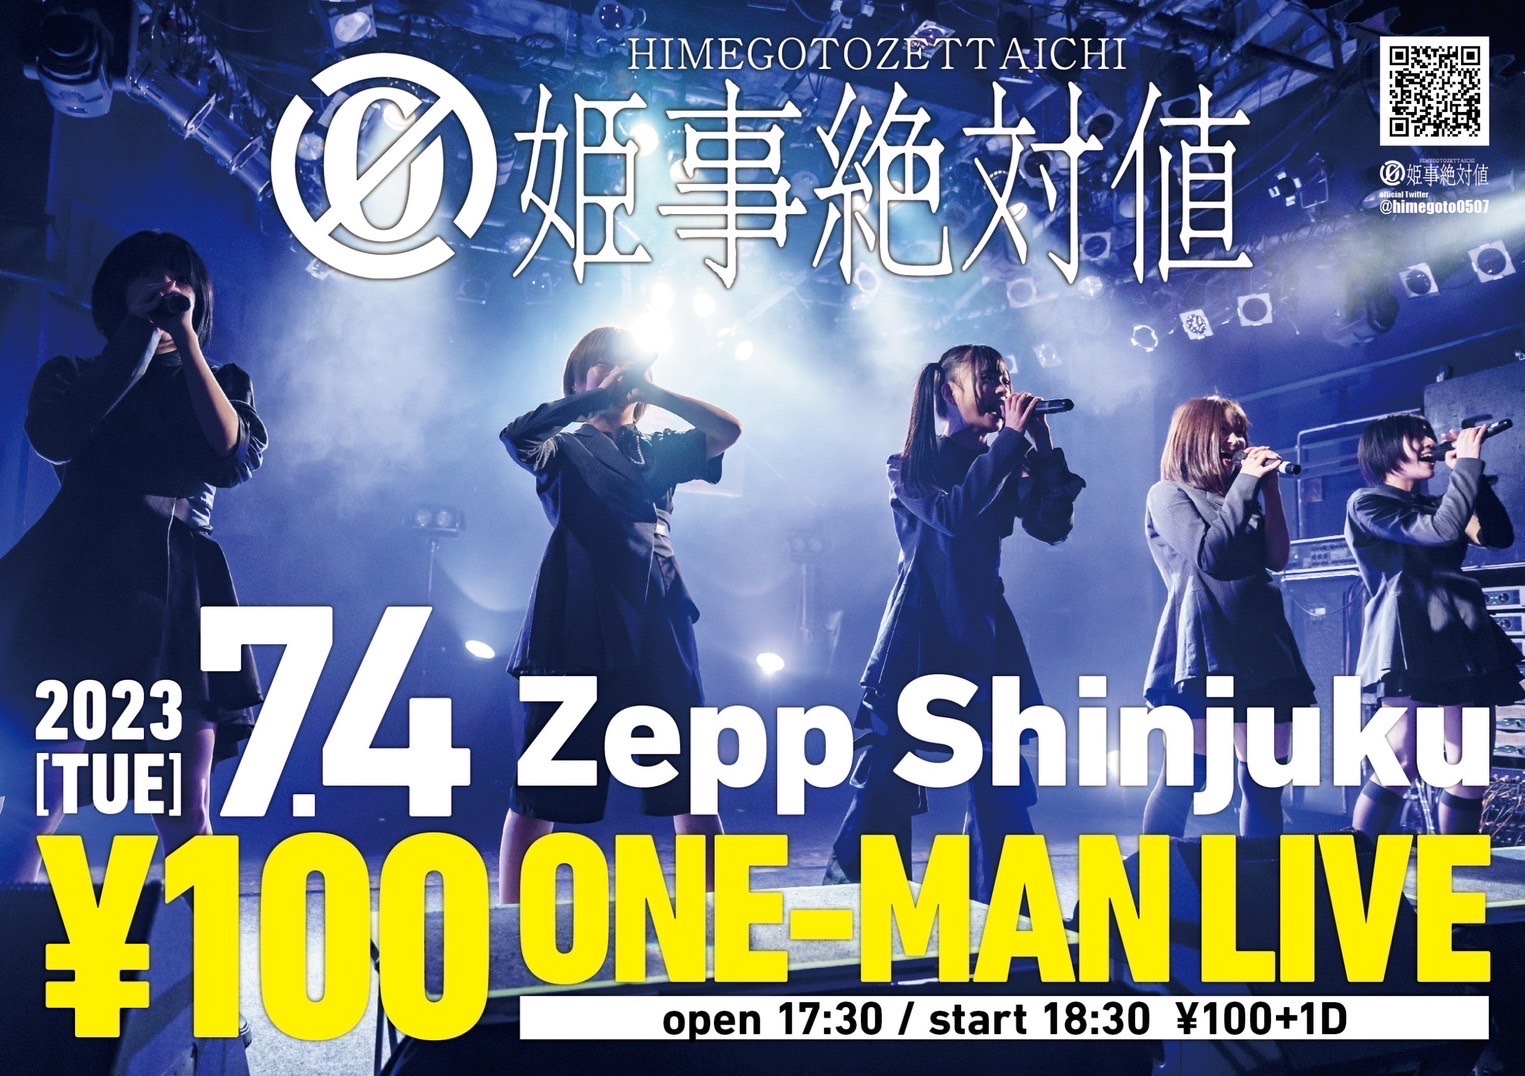 ～ 5人組女性アイドルグループ ～　
姫事絶対値がZepp shinjukuにて、
前代未聞の入場料金100円のワンマンライブを開催！！